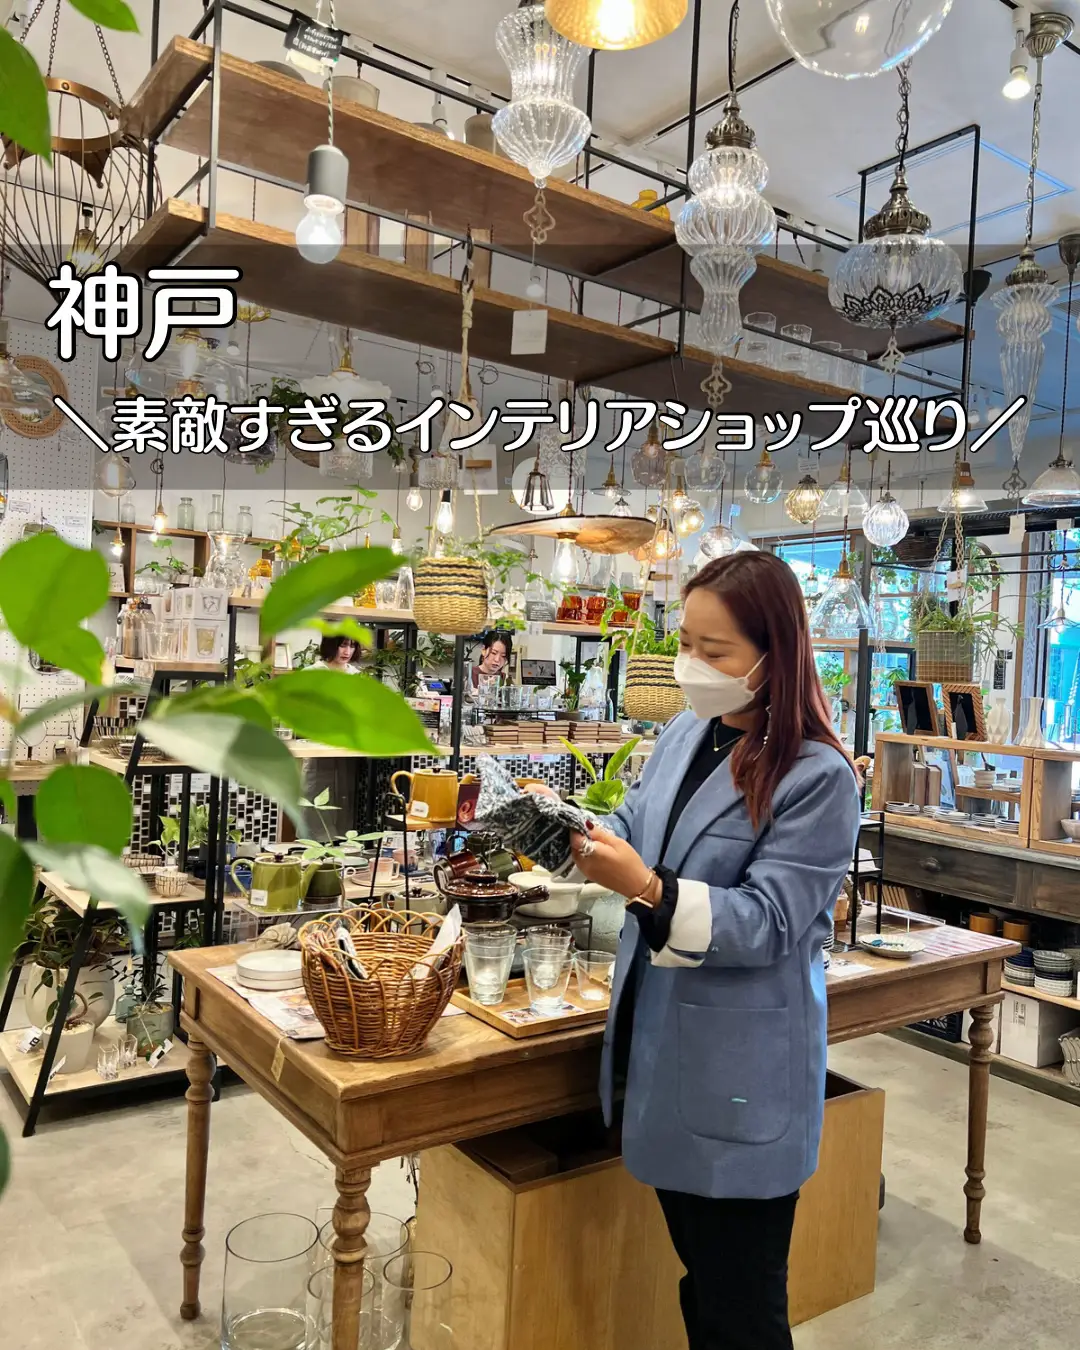 神戸板宿 雑貨屋 - Lemon8検索